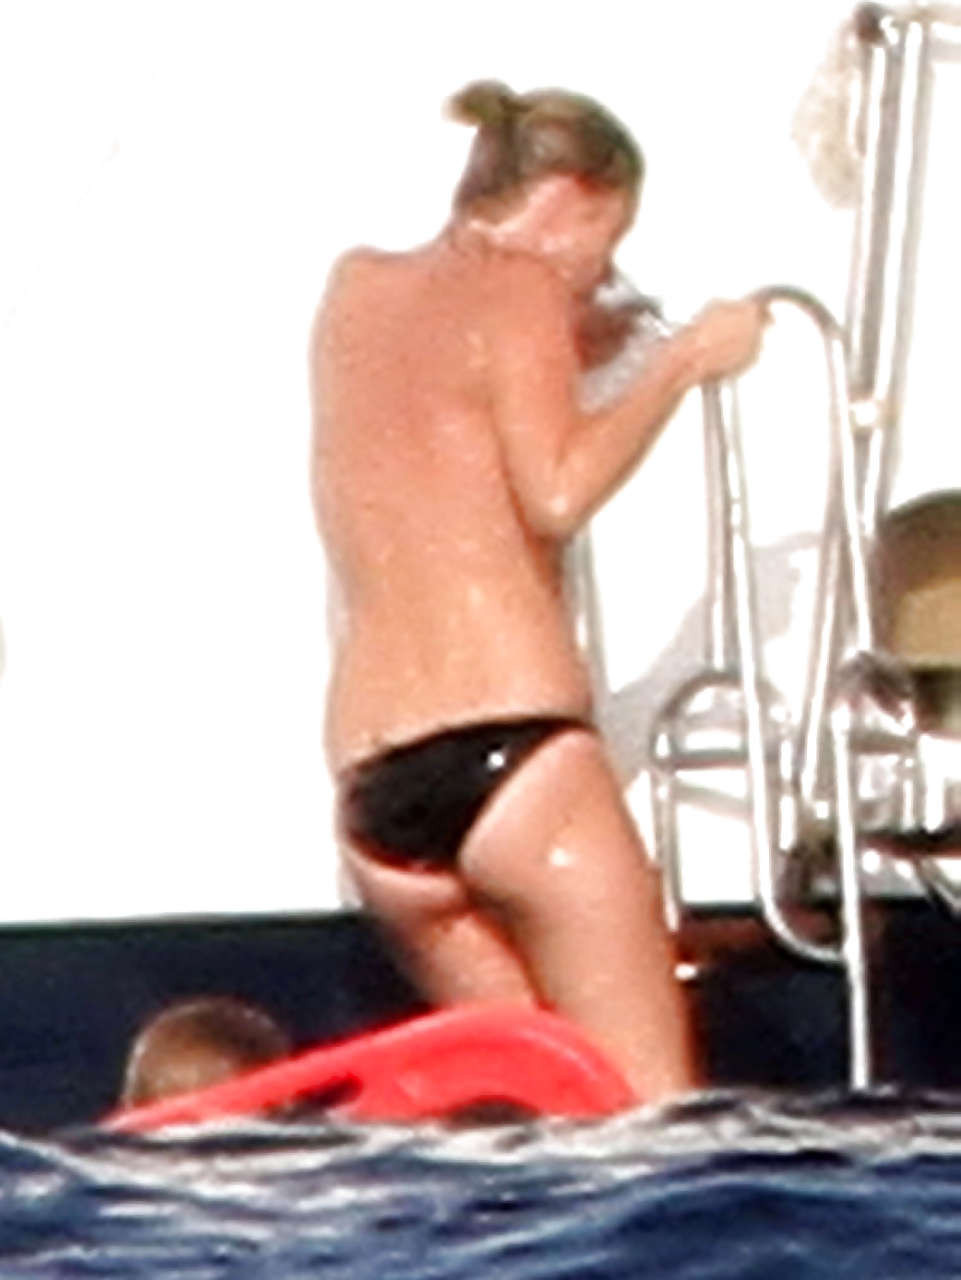 Kate Moss, seins nus, sautant d'un yacht et montrant sa culotte, photographiée par des paparazzis.
 #75290711